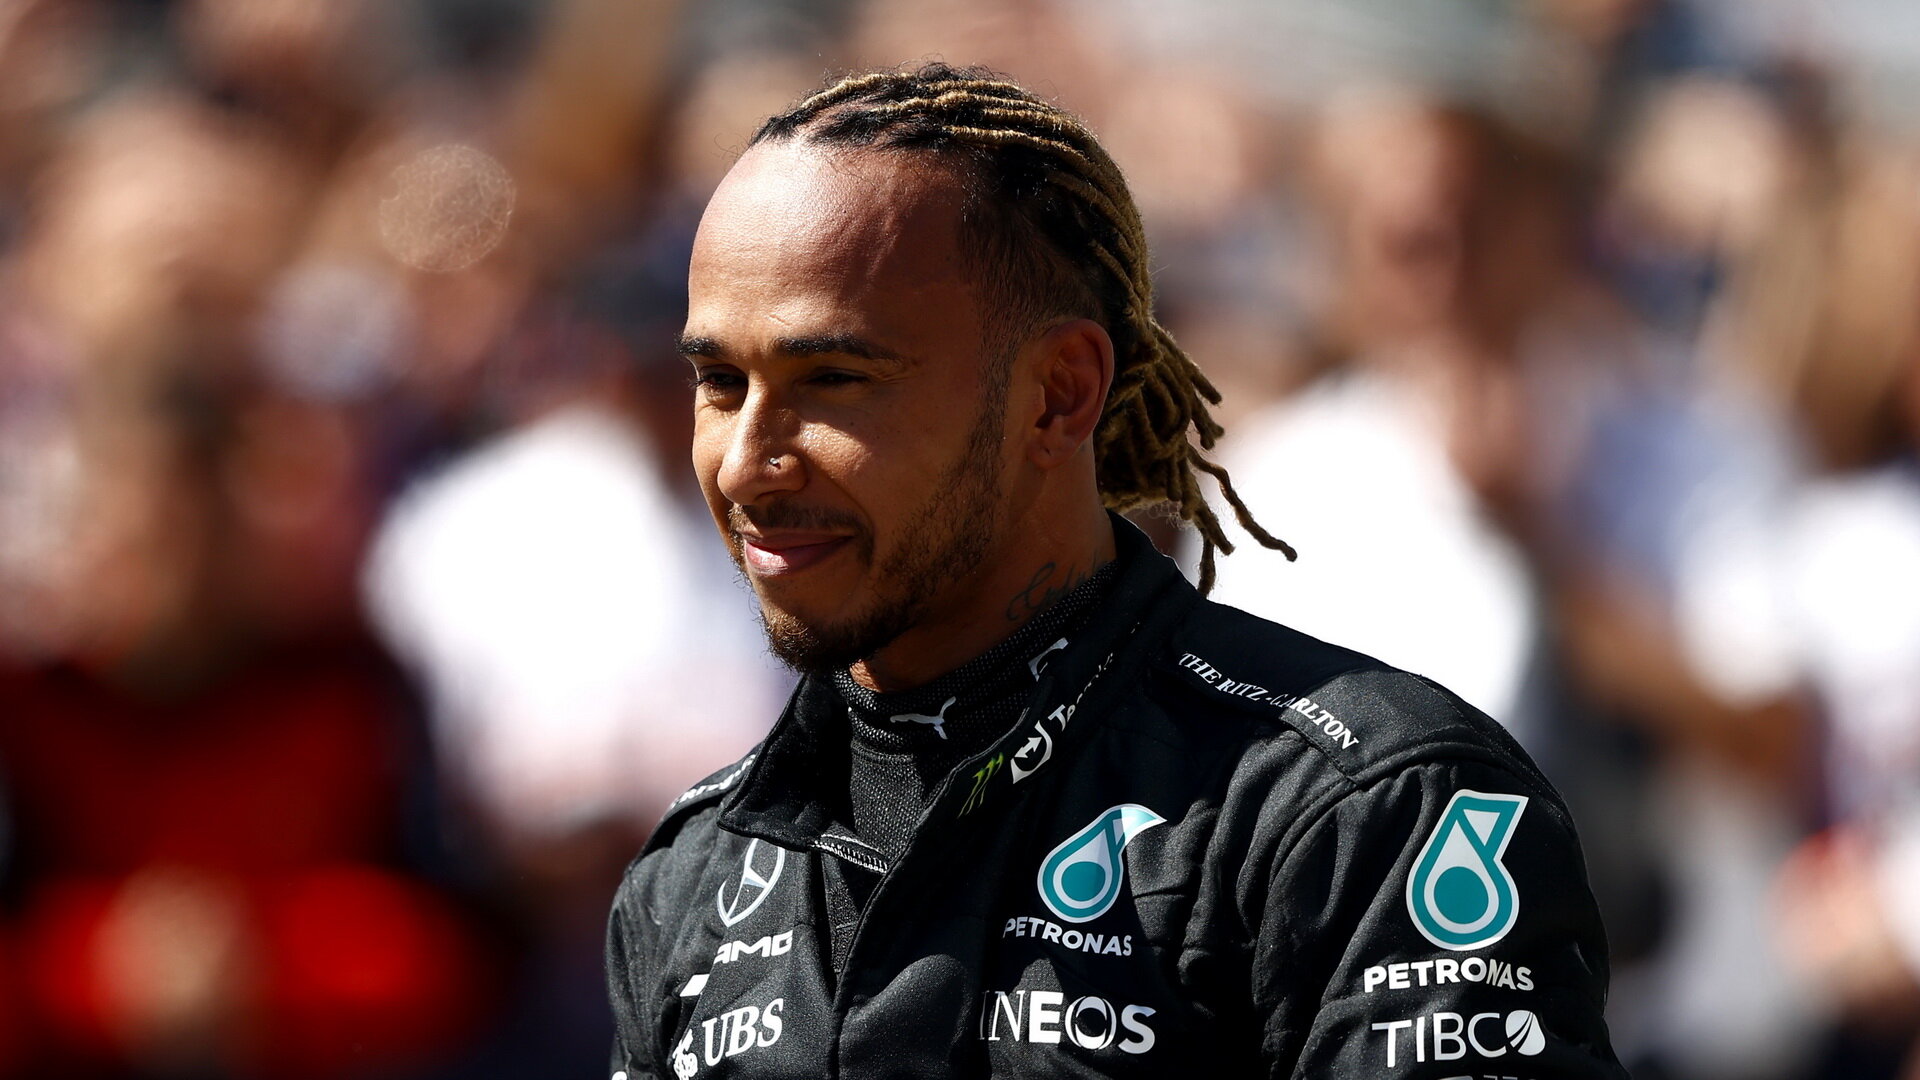 Lewis Hamilton touží po vítězství - dočká se už tento víkend?